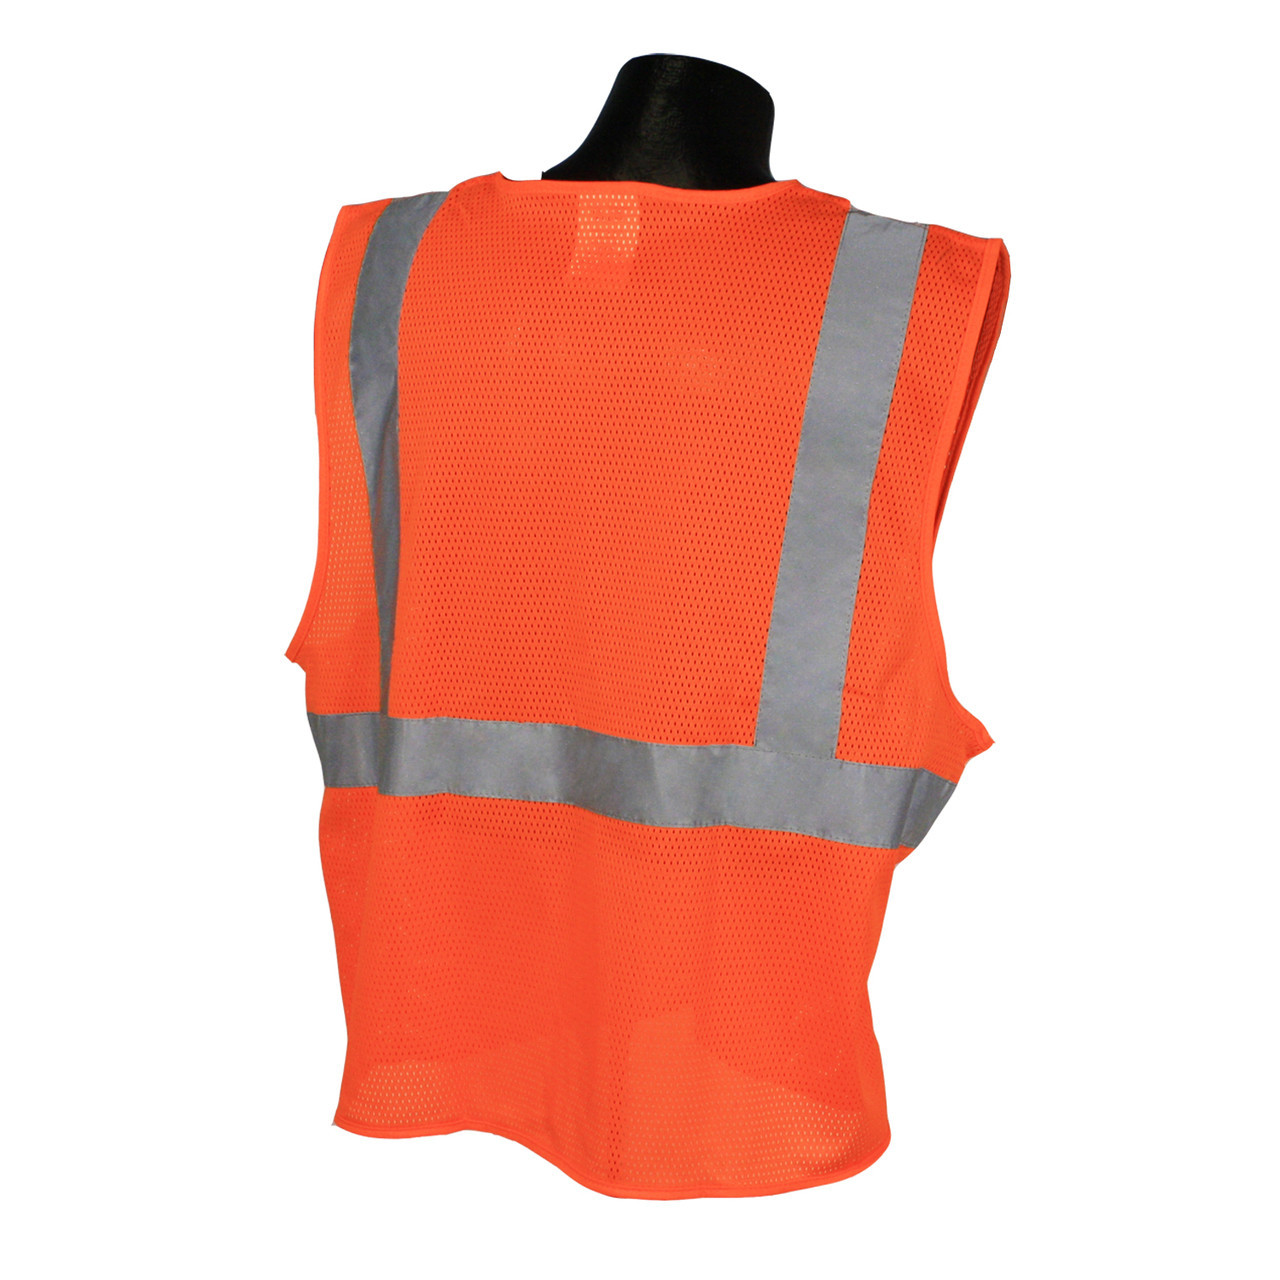 SV2 Safety Vest Safety Orange with Hook and Loop